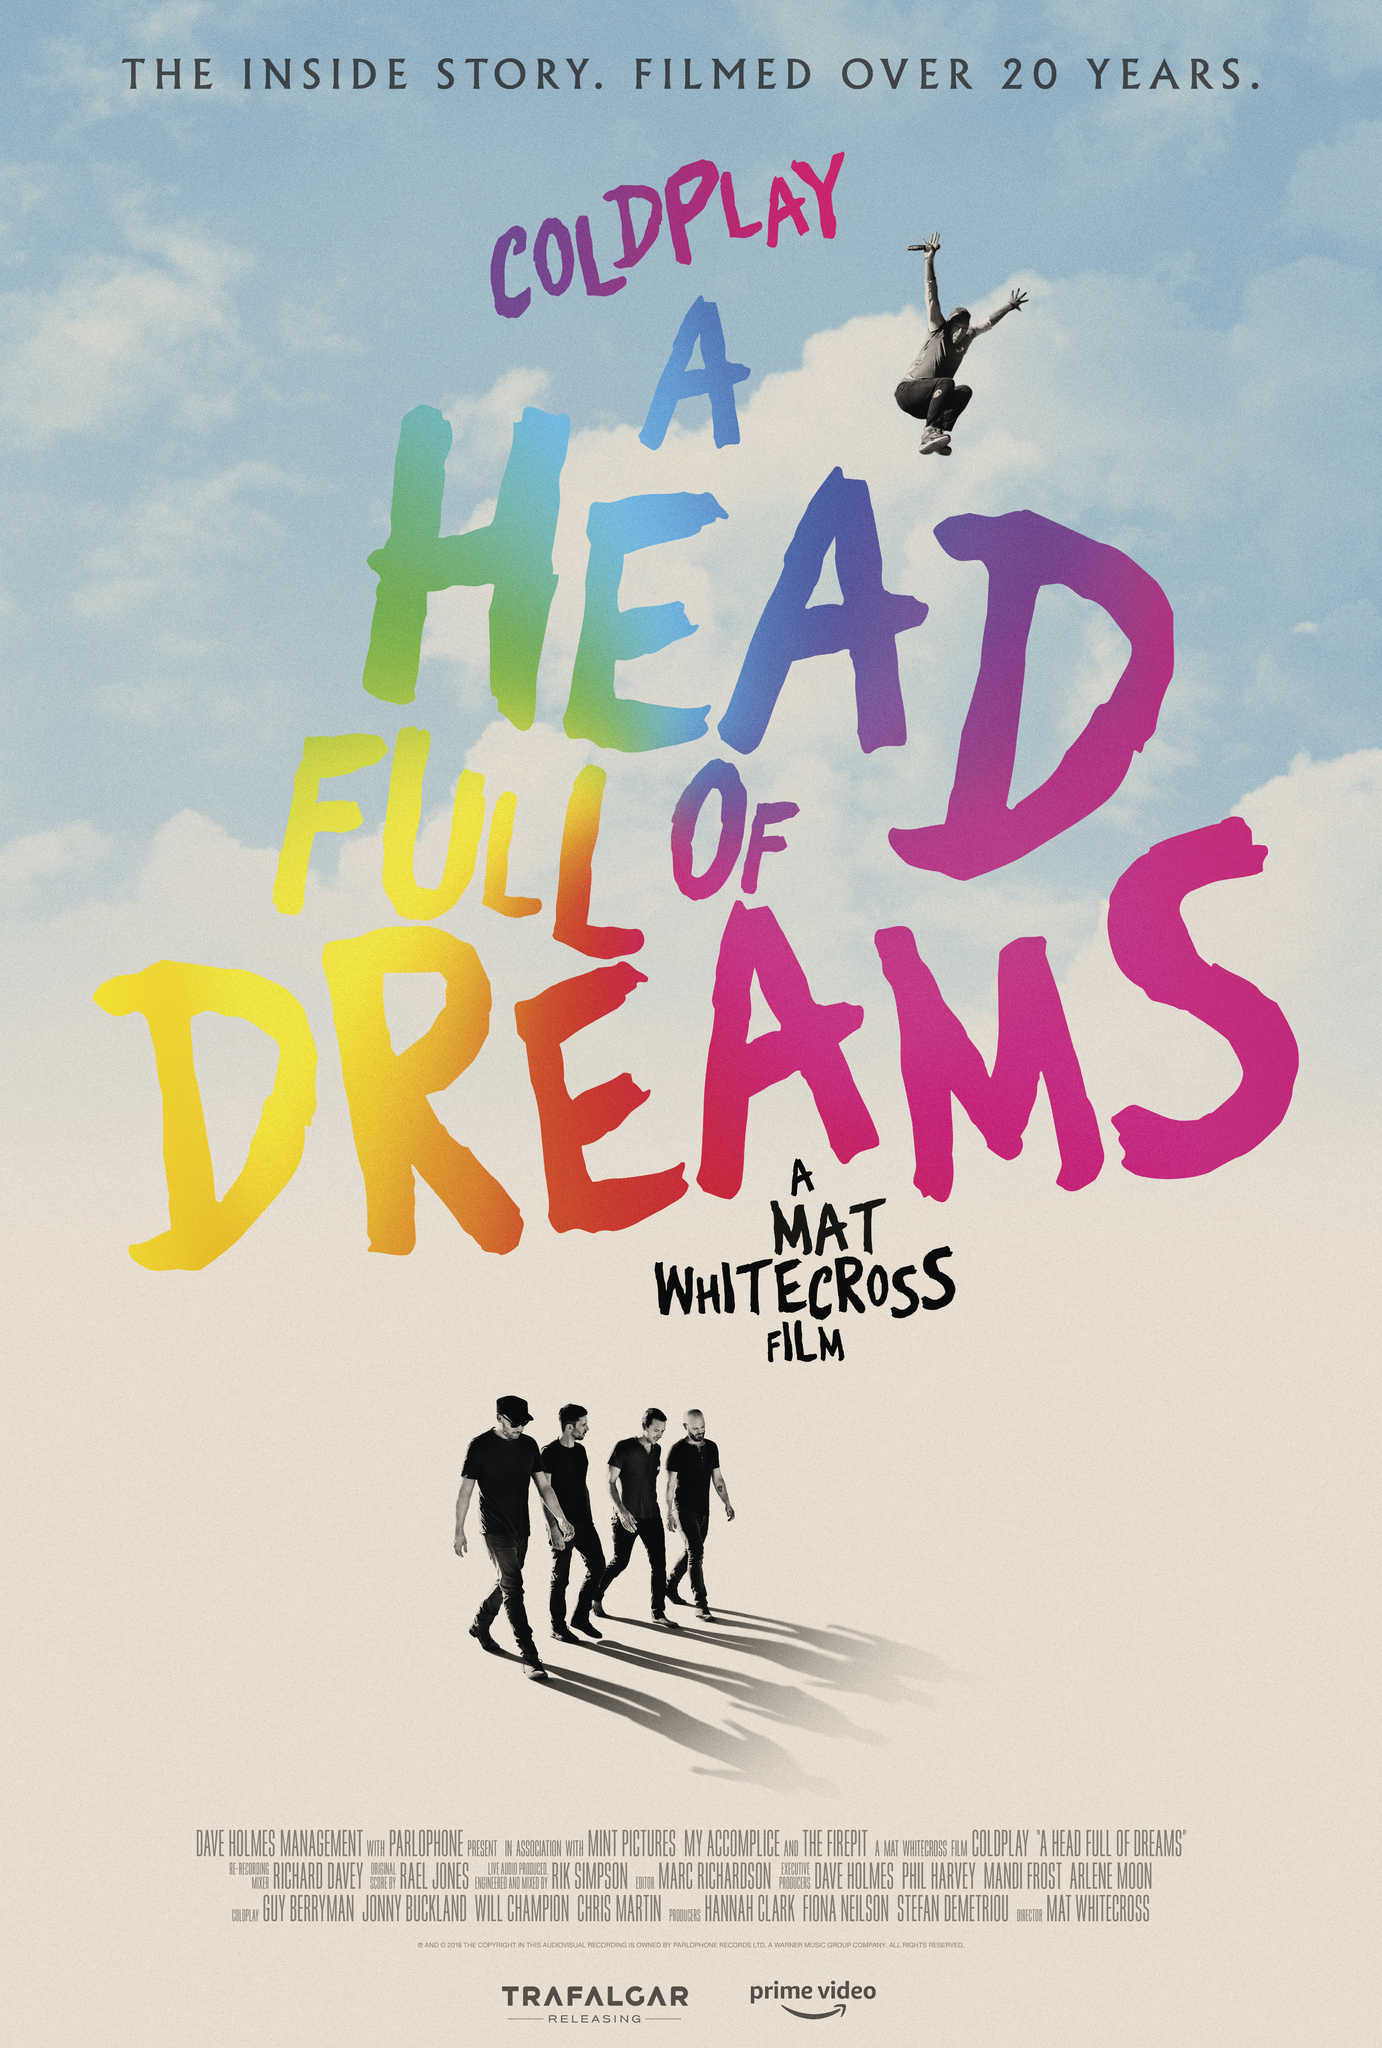 ดูหนังออนไลน์ฟรี Coldplay A Head Full of Dreams (2018) โคลด์เพลย์ อะเฮดฟูลออฟดรีมส์ หนังเต็มเรื่อง หนังมาสเตอร์ ดูหนังHD ดูหนังออนไลน์ ดูหนังใหม่